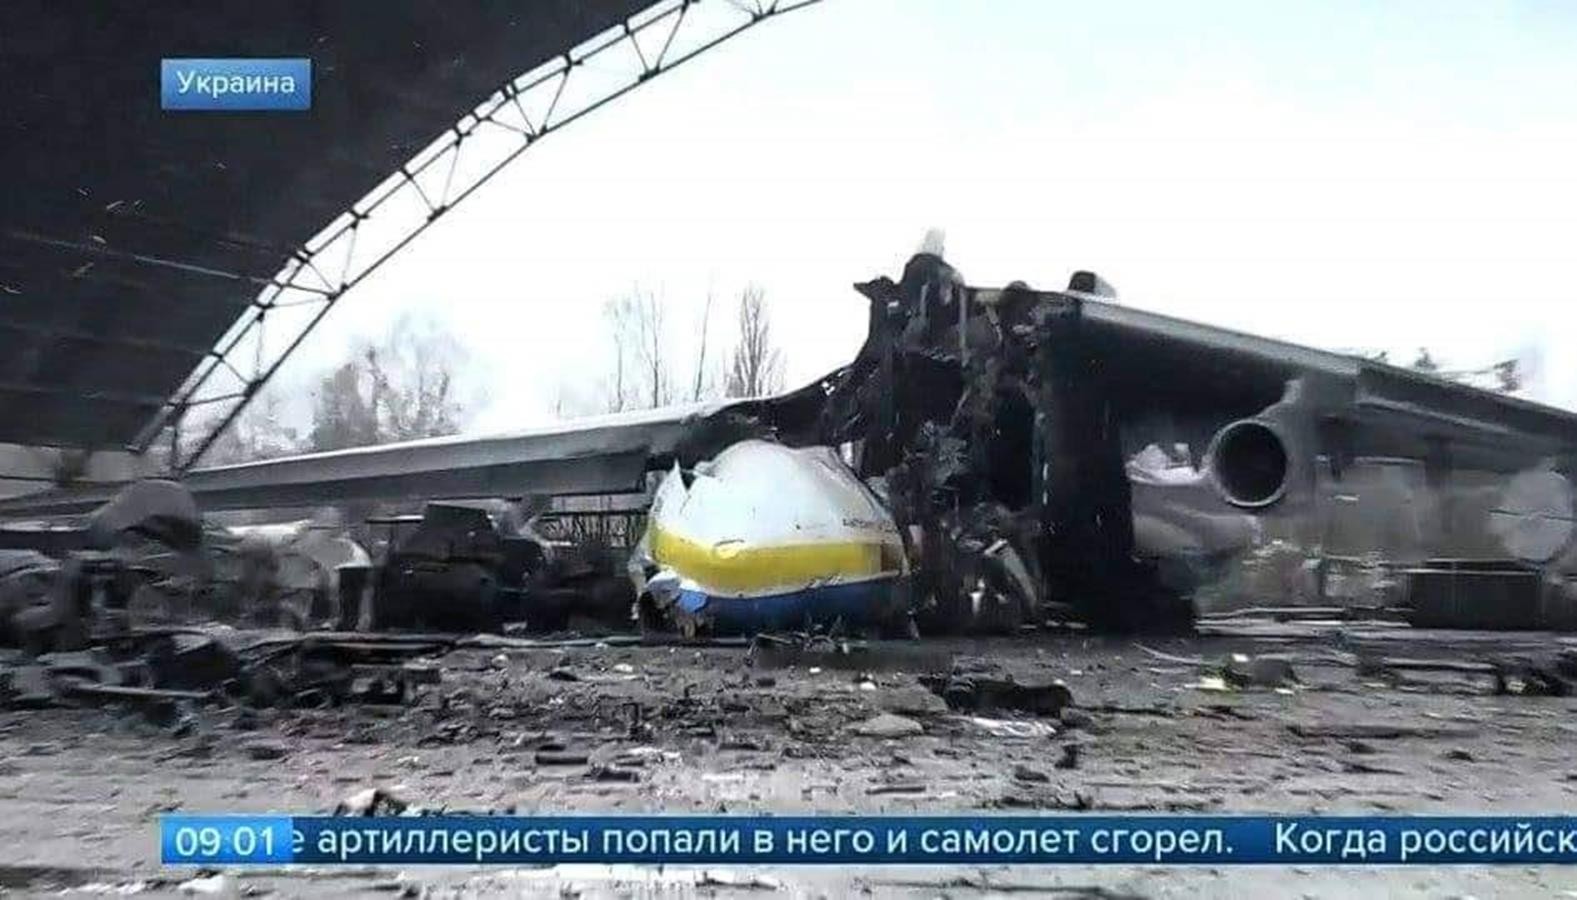 Zdjęcia potwierdzają - największy samolot świata zniszczony. Czym był An-225 Mrija i co z jego następcą